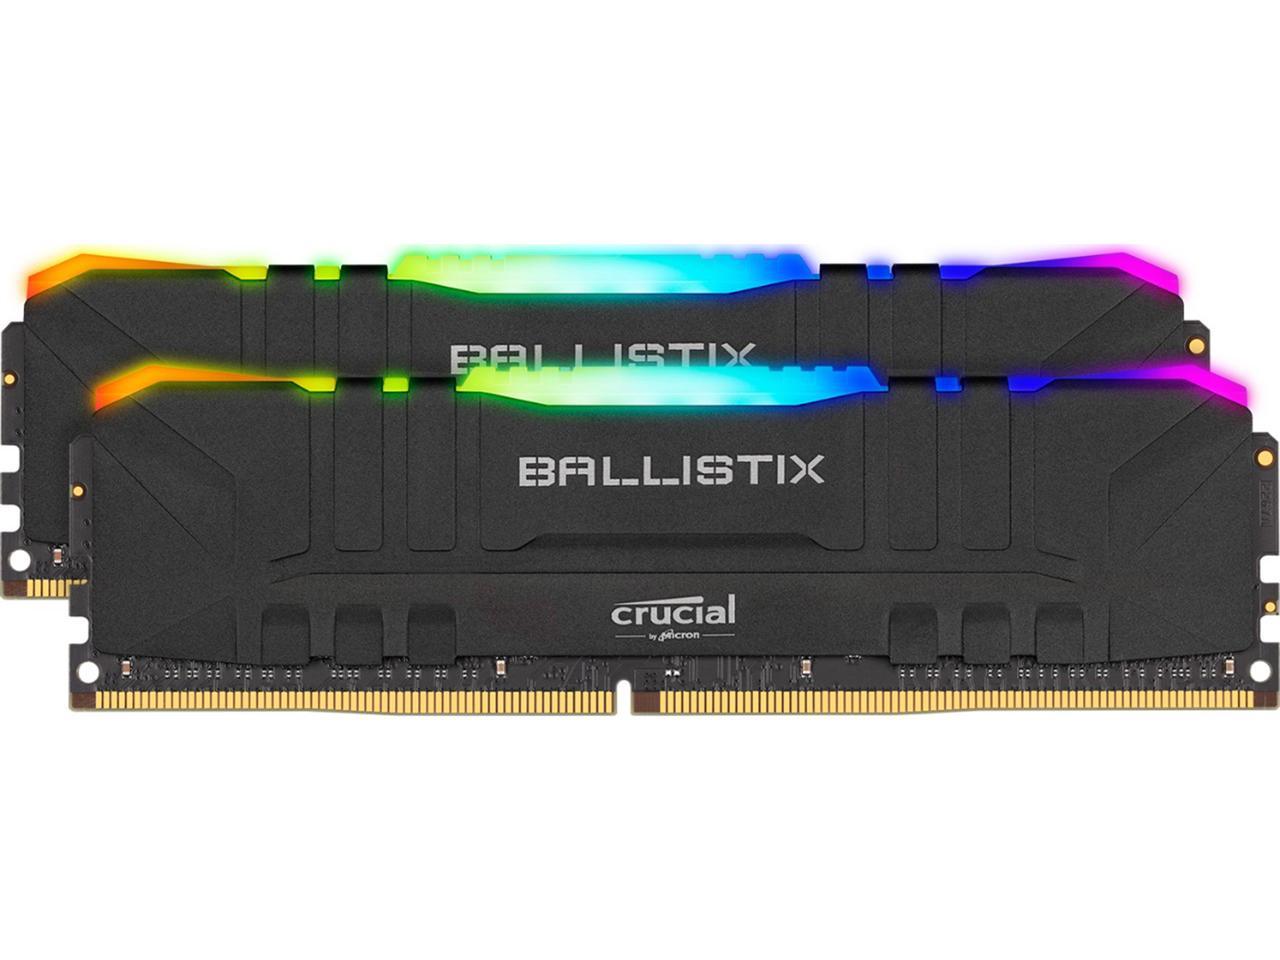 Crucial Ballistix RGB 16GB (2 x 8GB)DDR4 3200 Desktop Memory 